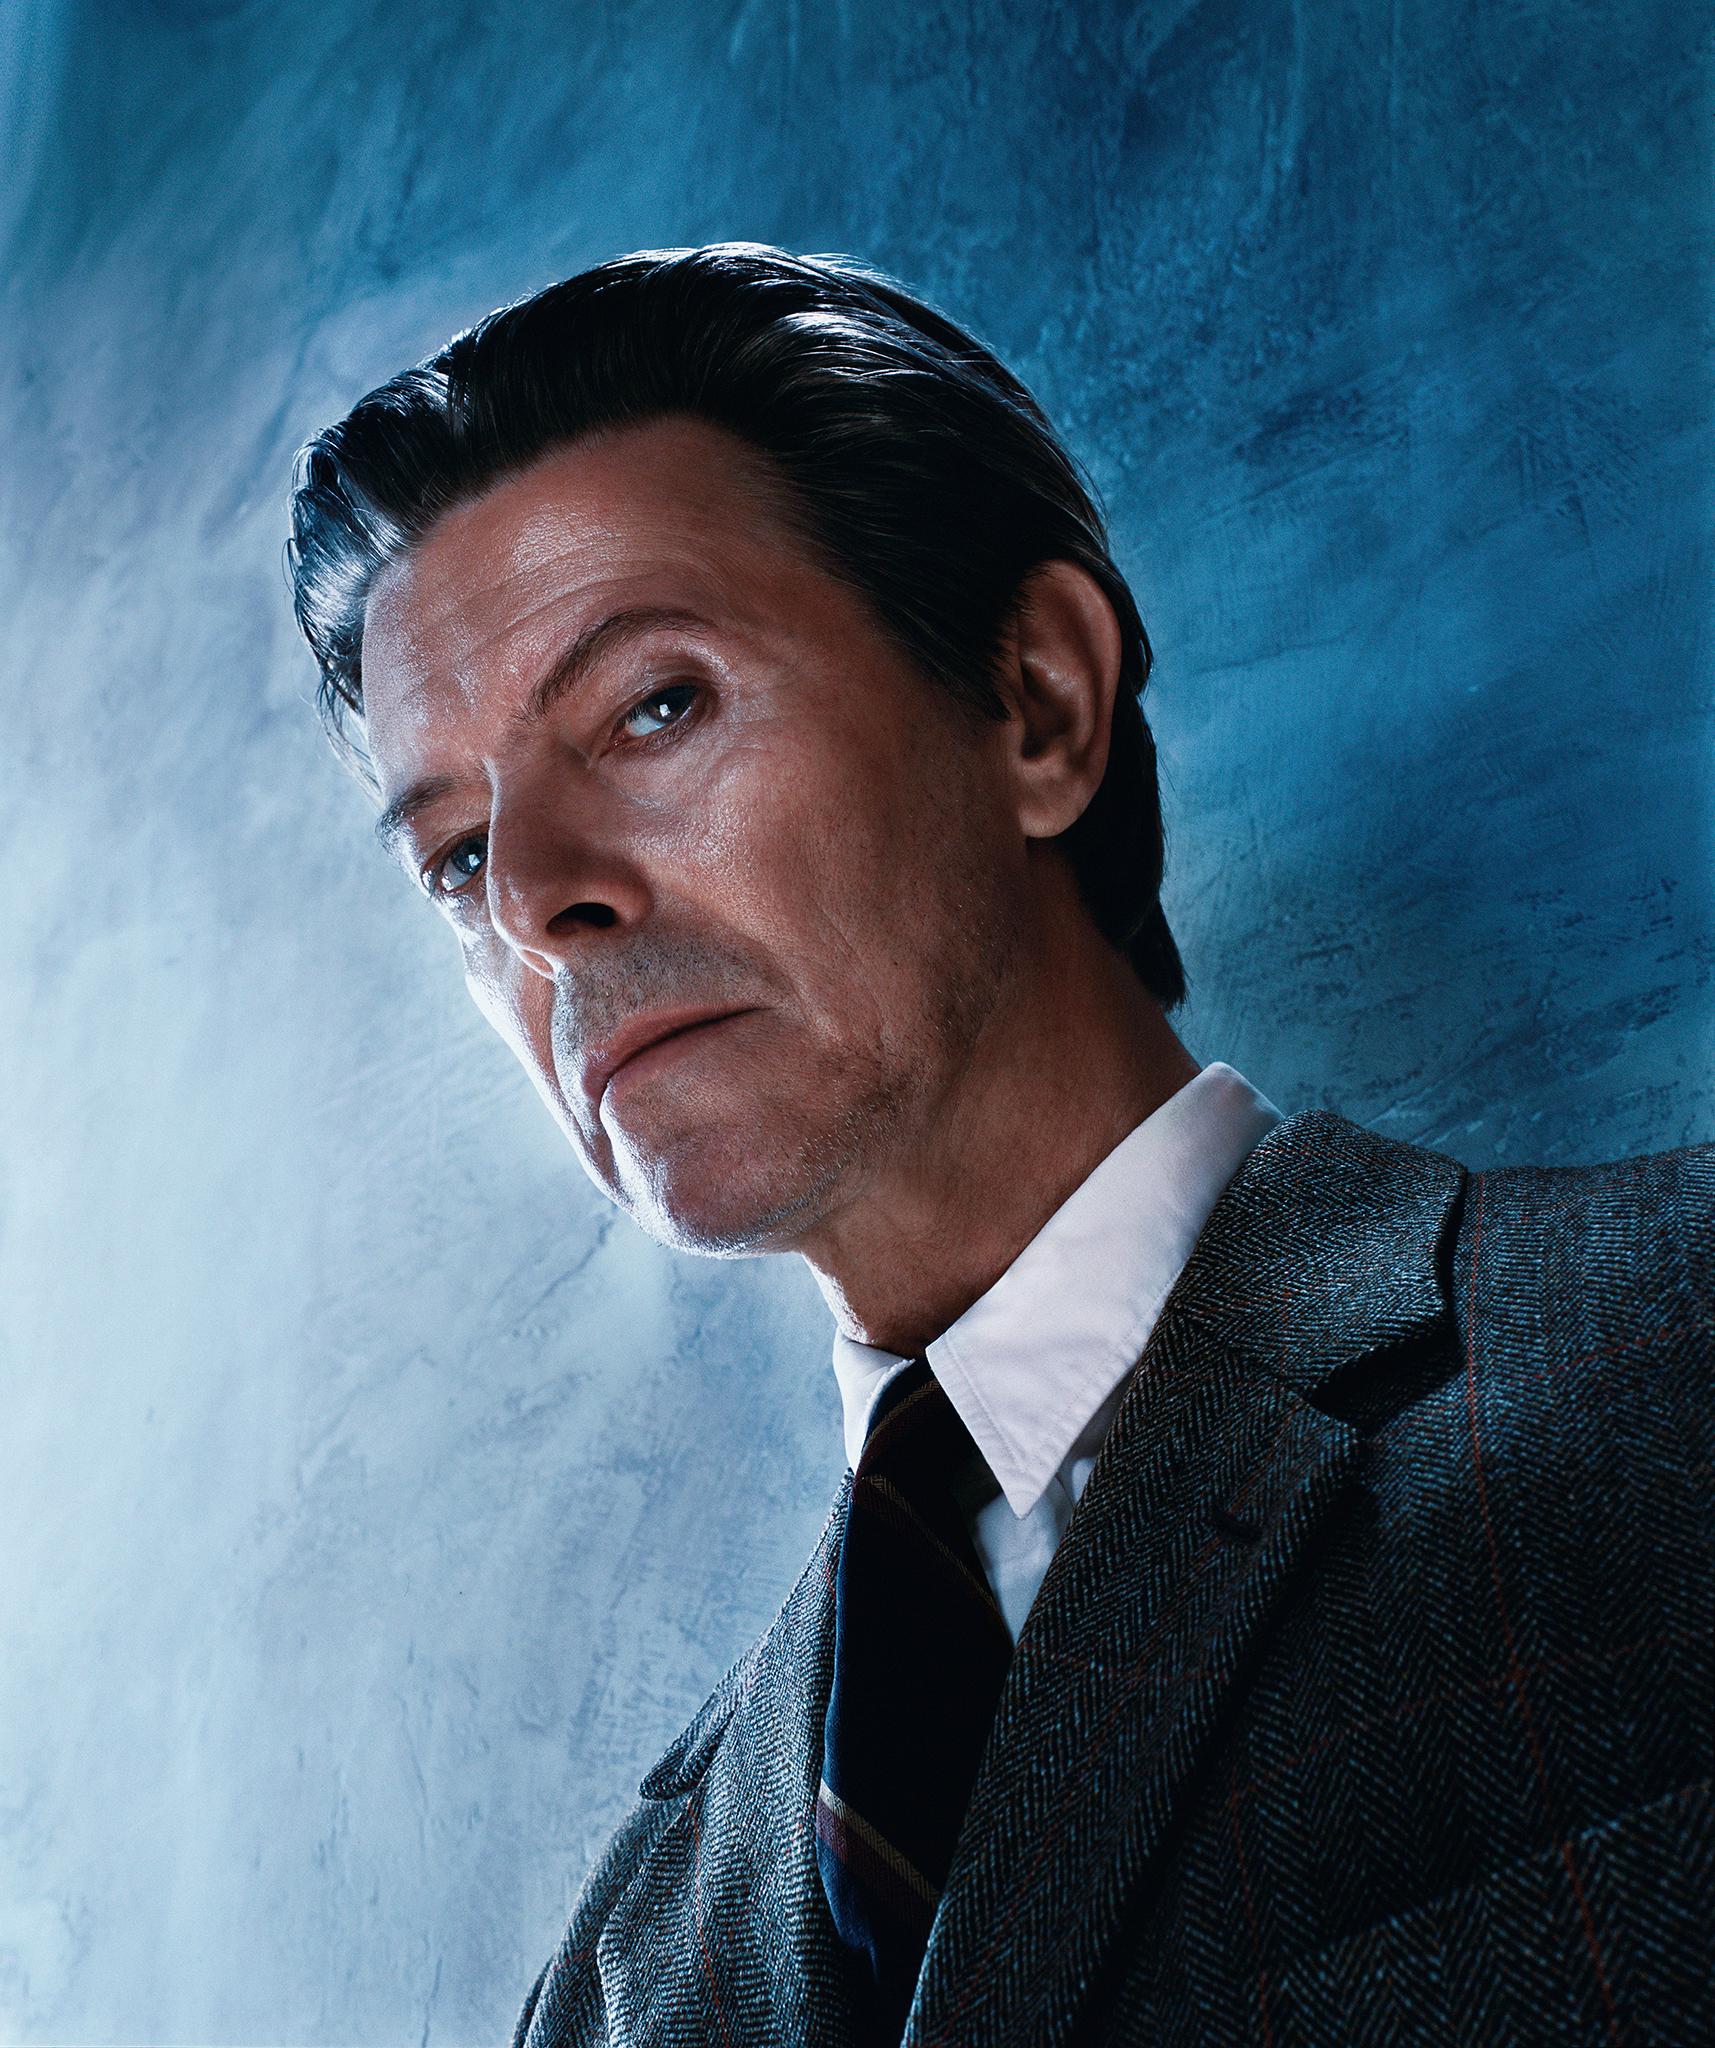 Markus Klinko Portrait Photograph – David Bowie: Der Look